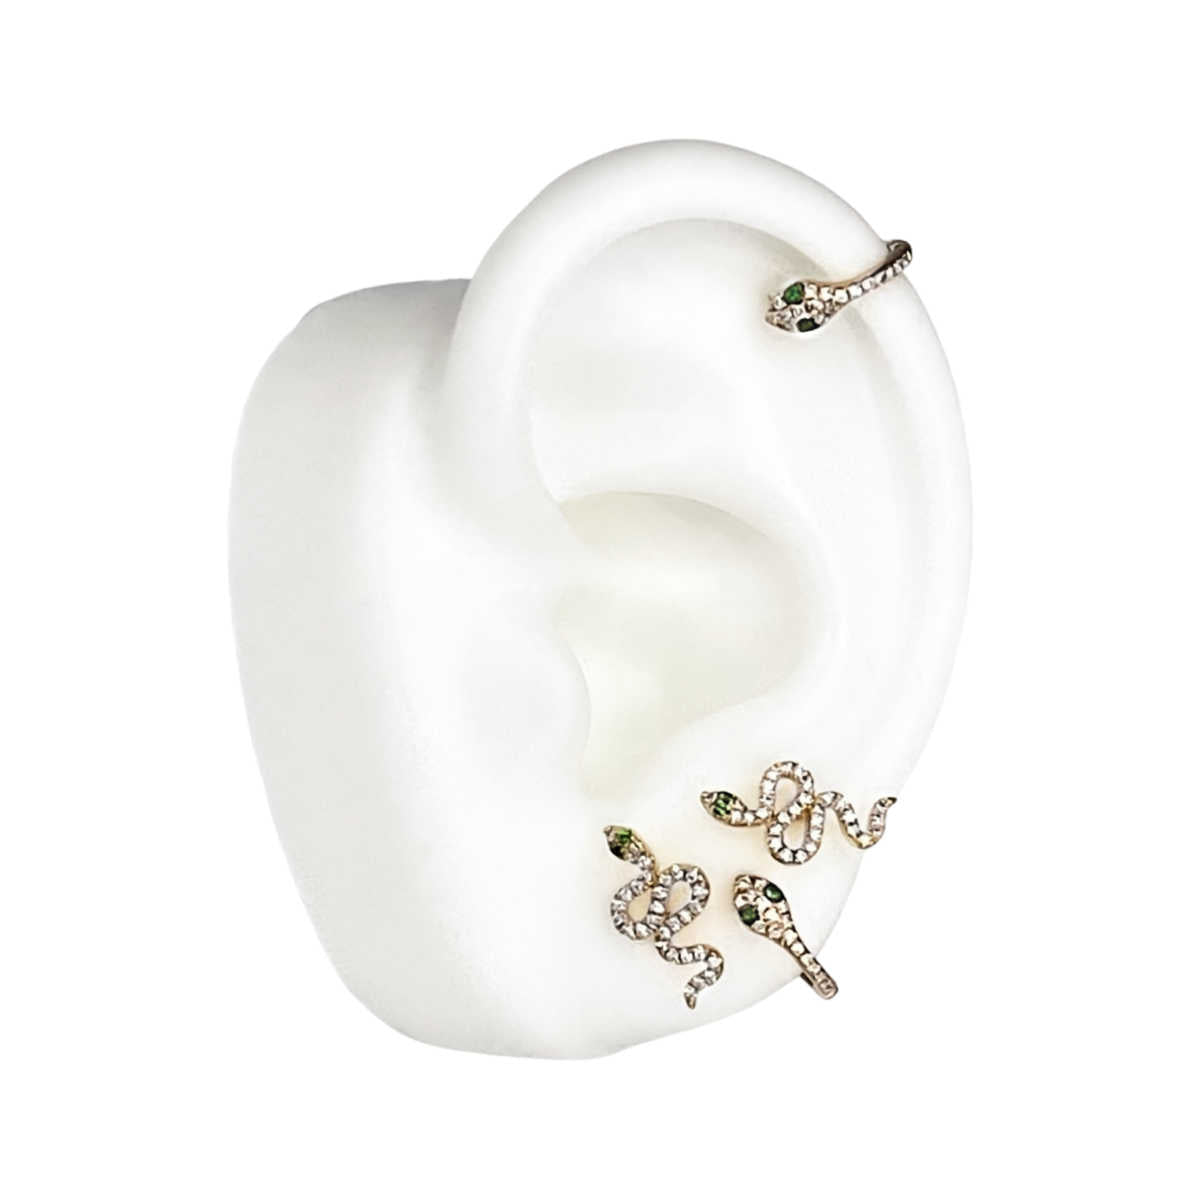 Diamond Huggie Earrings in Gold | Gold Snake Earring | Helix Hoop Gold Snake Cartilage Earring